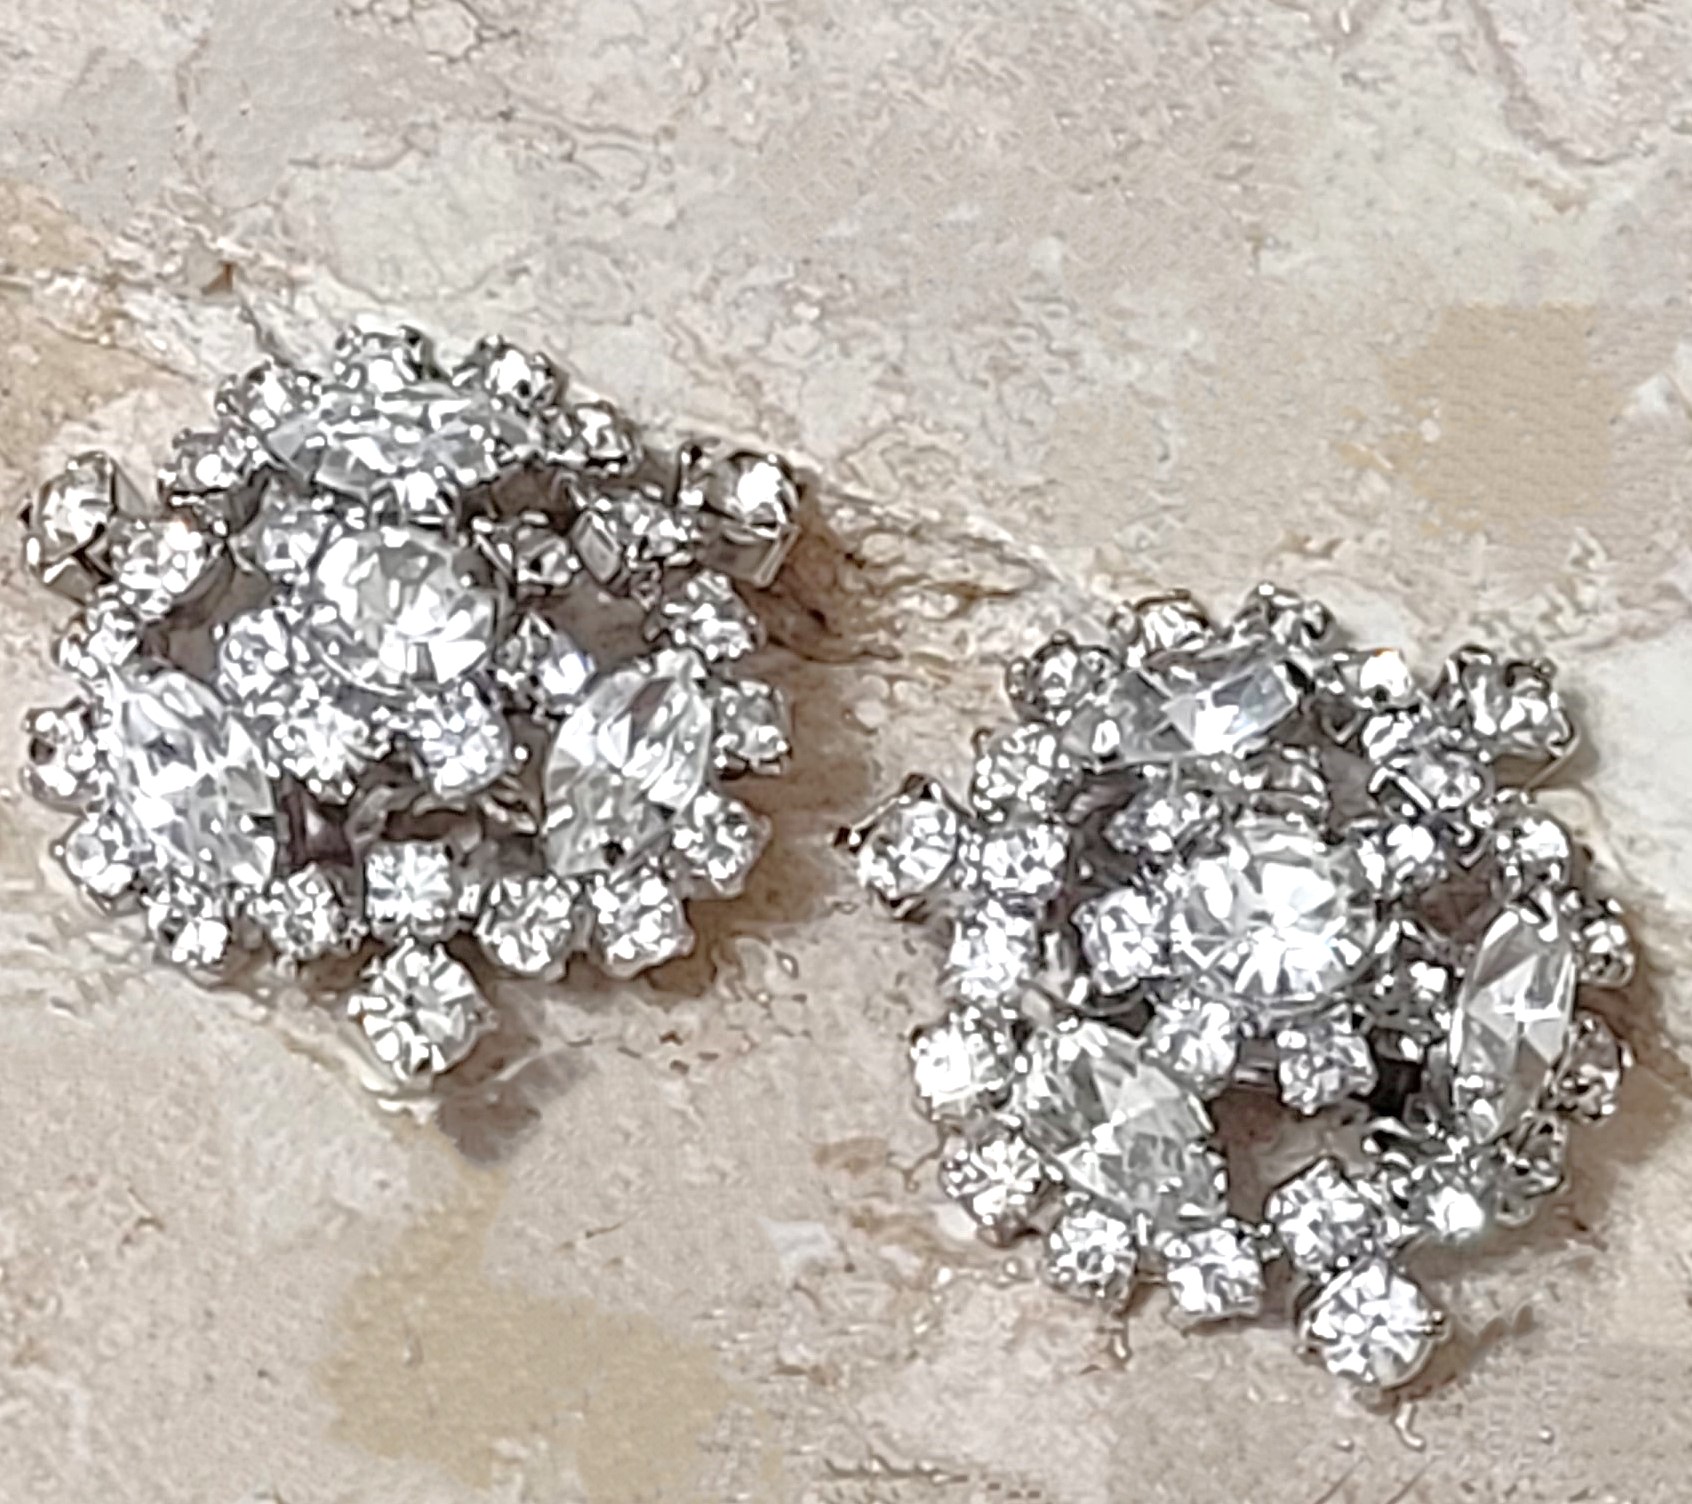 Rhinestone cluster earrings, vintage, signed designer, KRAMER